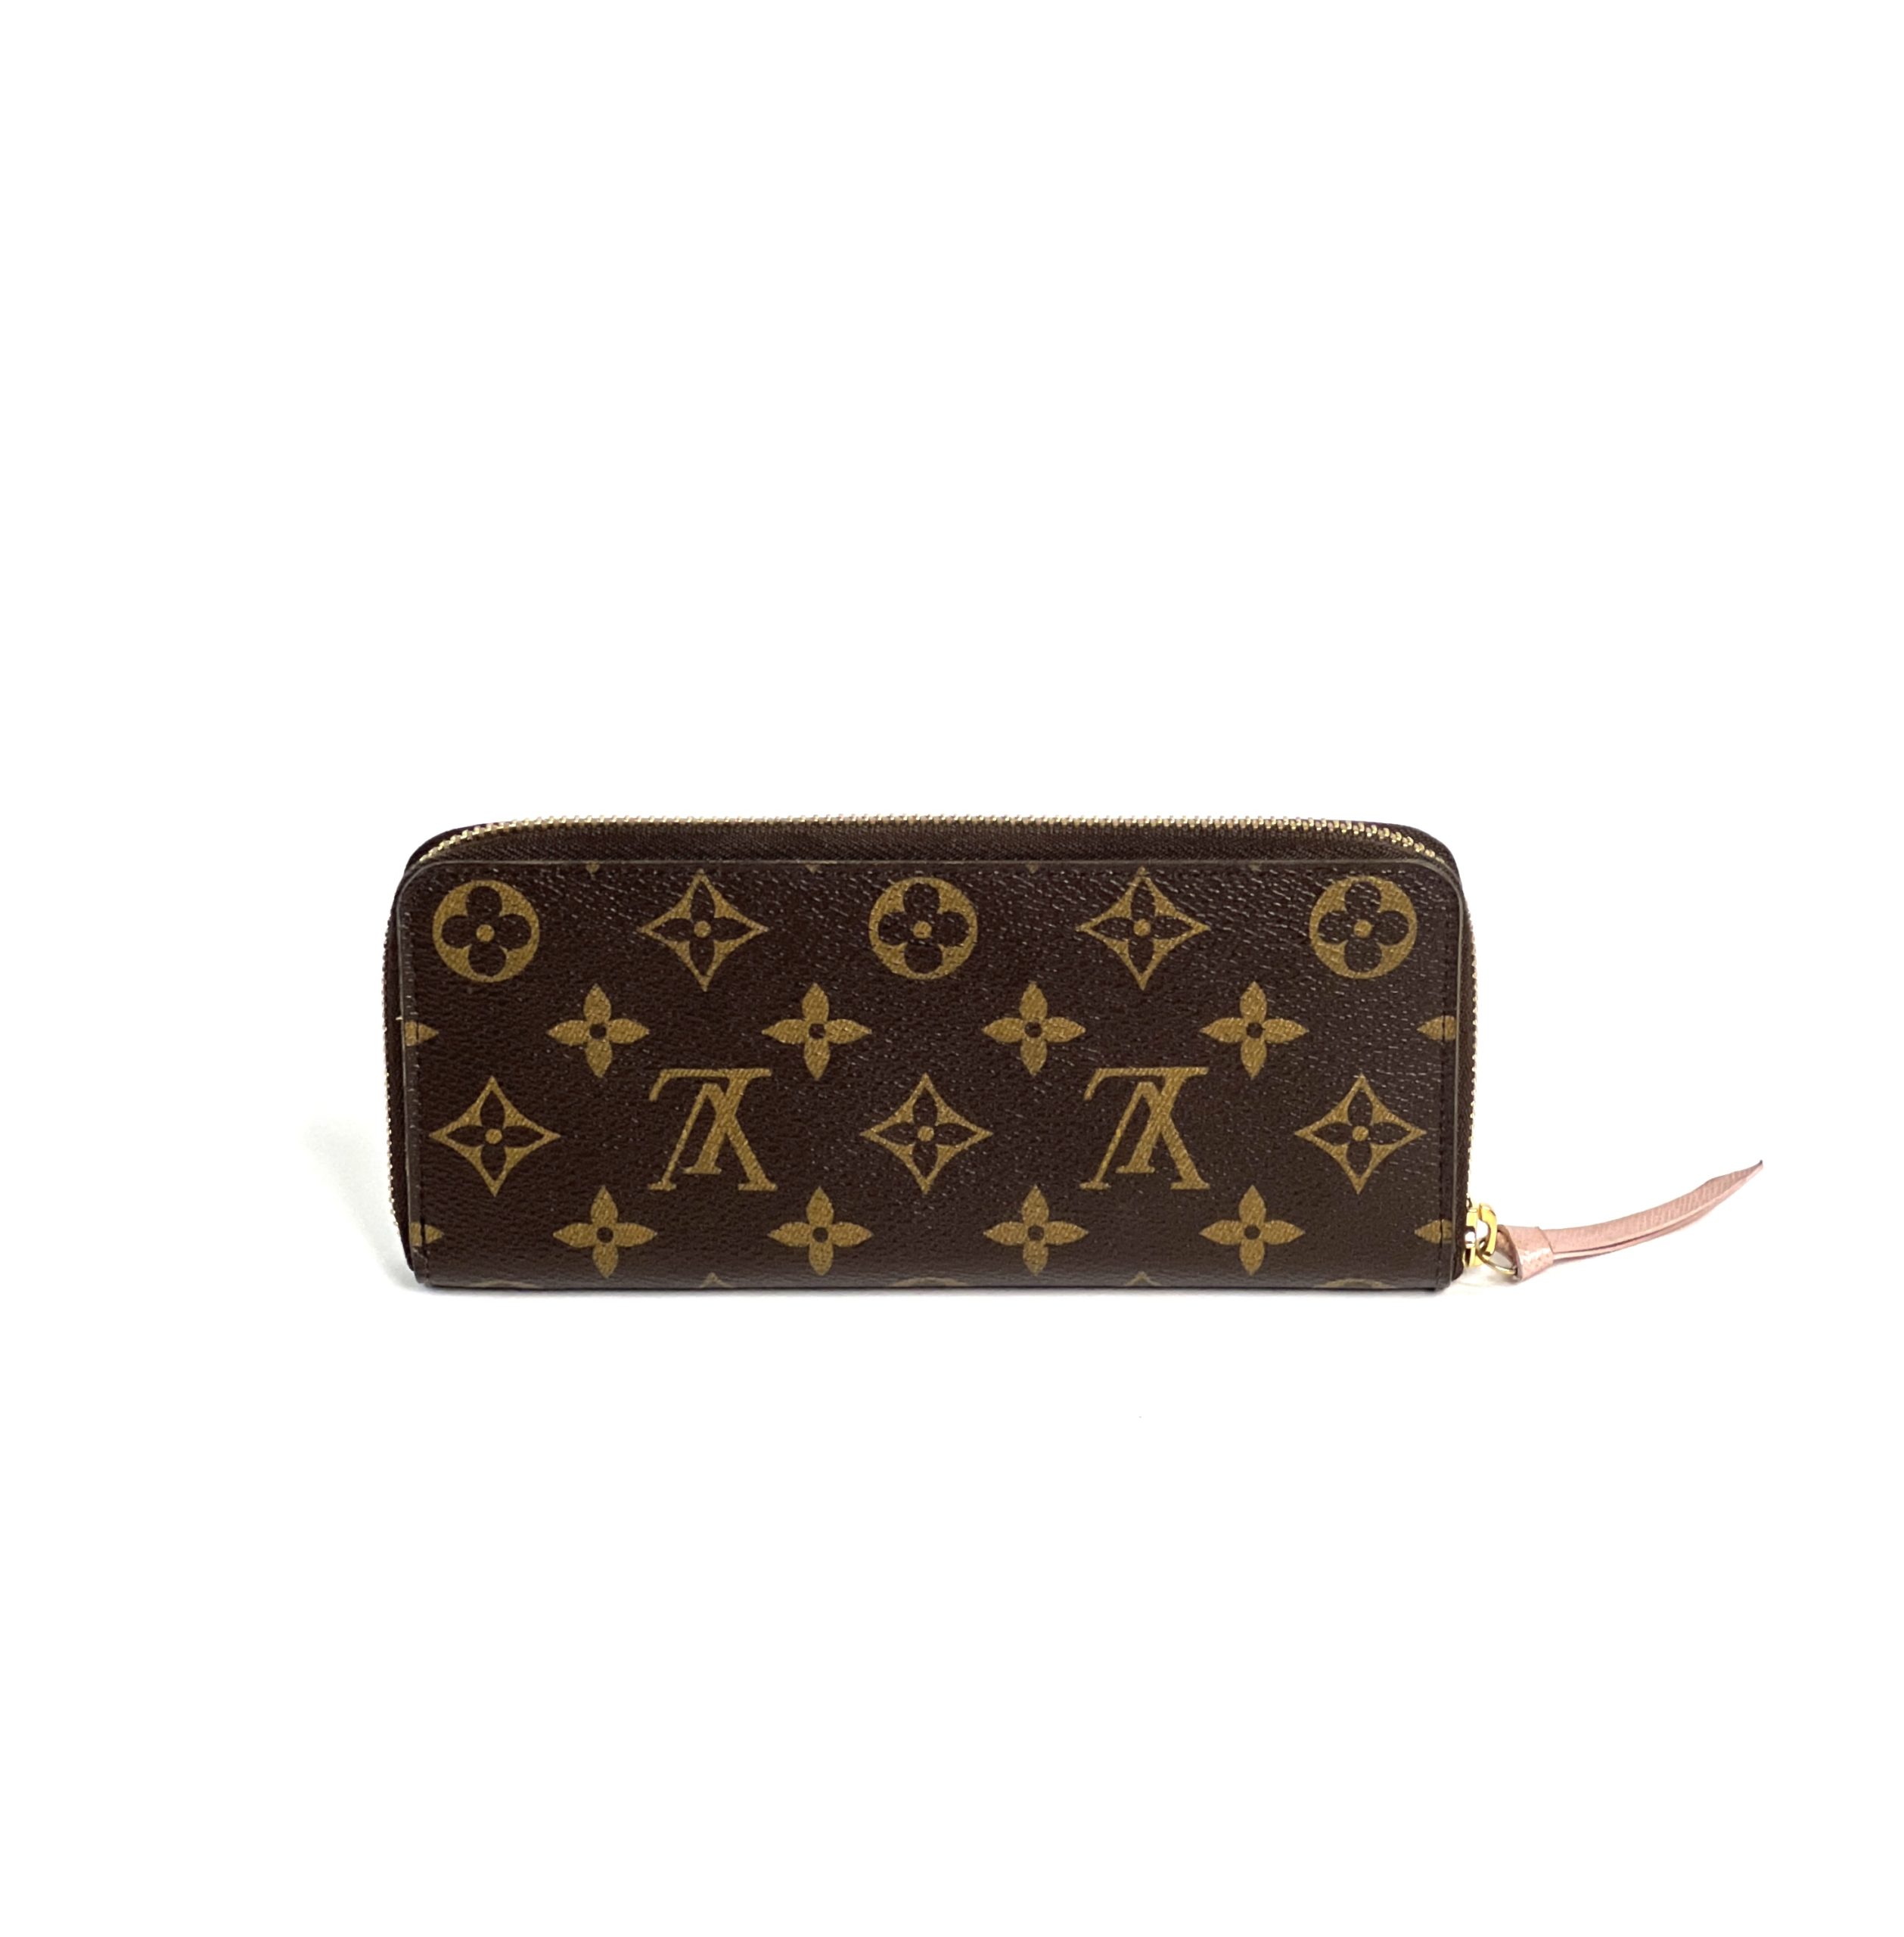 Louis Vuitton Neo noe + pochette accessoires + wallet Celemence